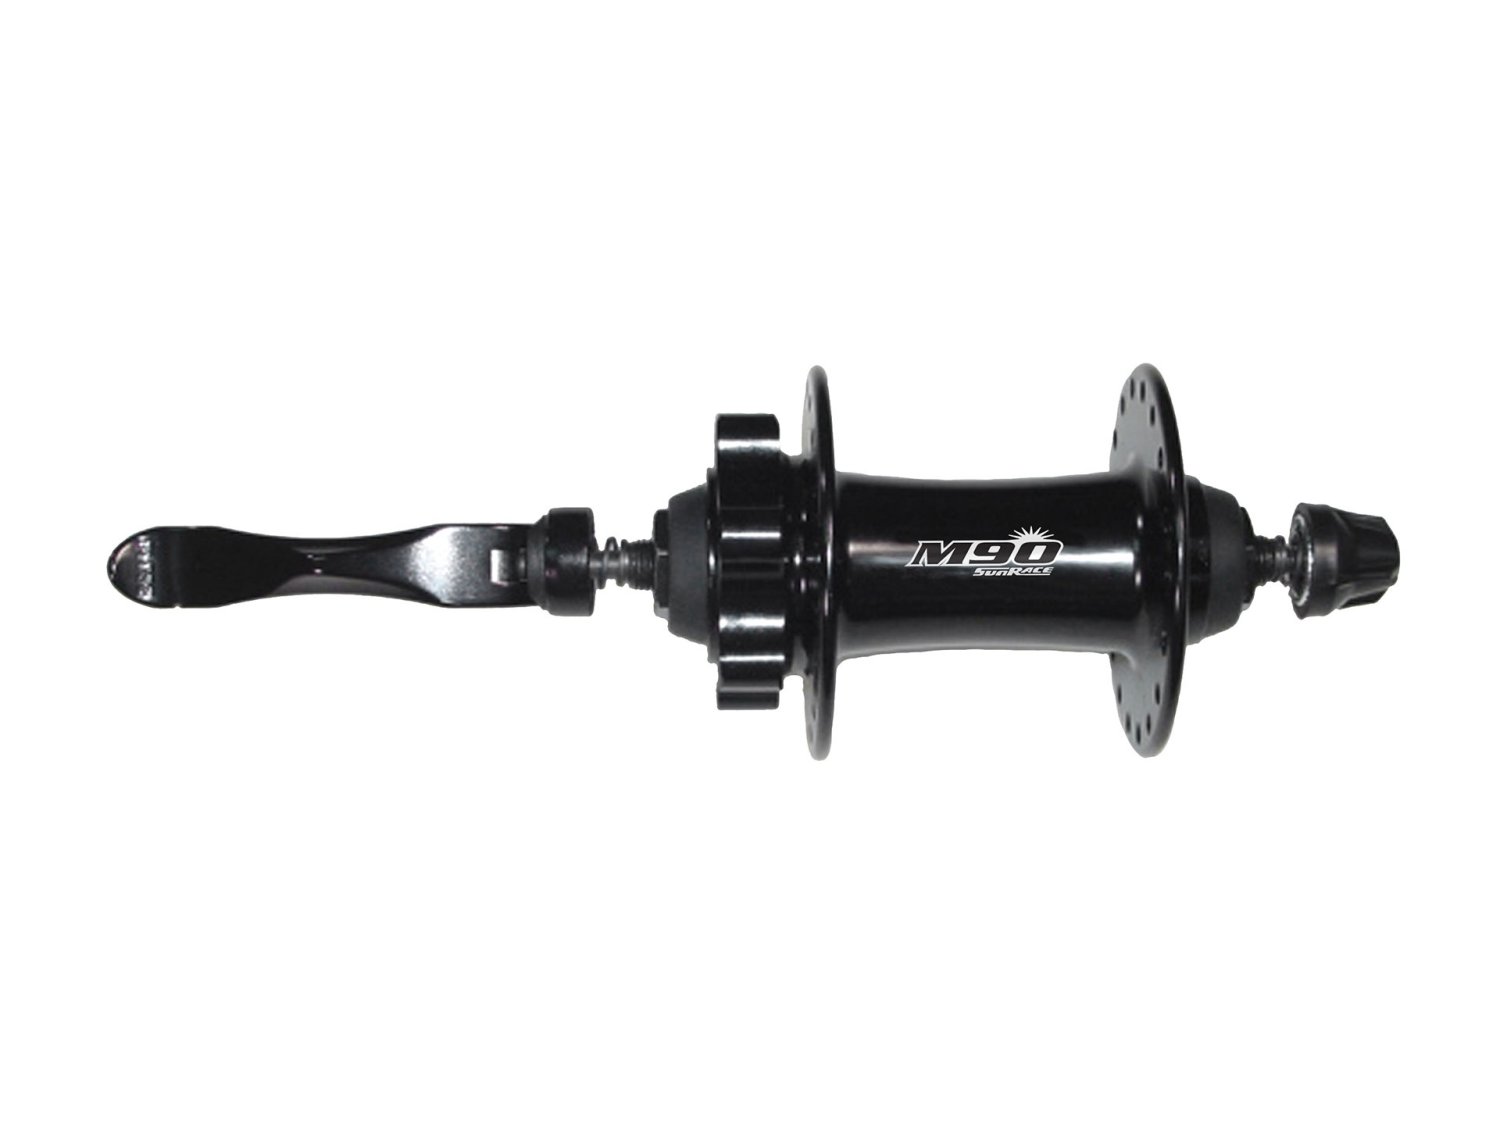 Втулки для велосипеда  ВашВелосипед Втулка велосипедная SUNRACE HBM96.F0QS.DS1.BX M96, передняя, с эксцентриком, 32H, под диск, чёрный, 06-201509